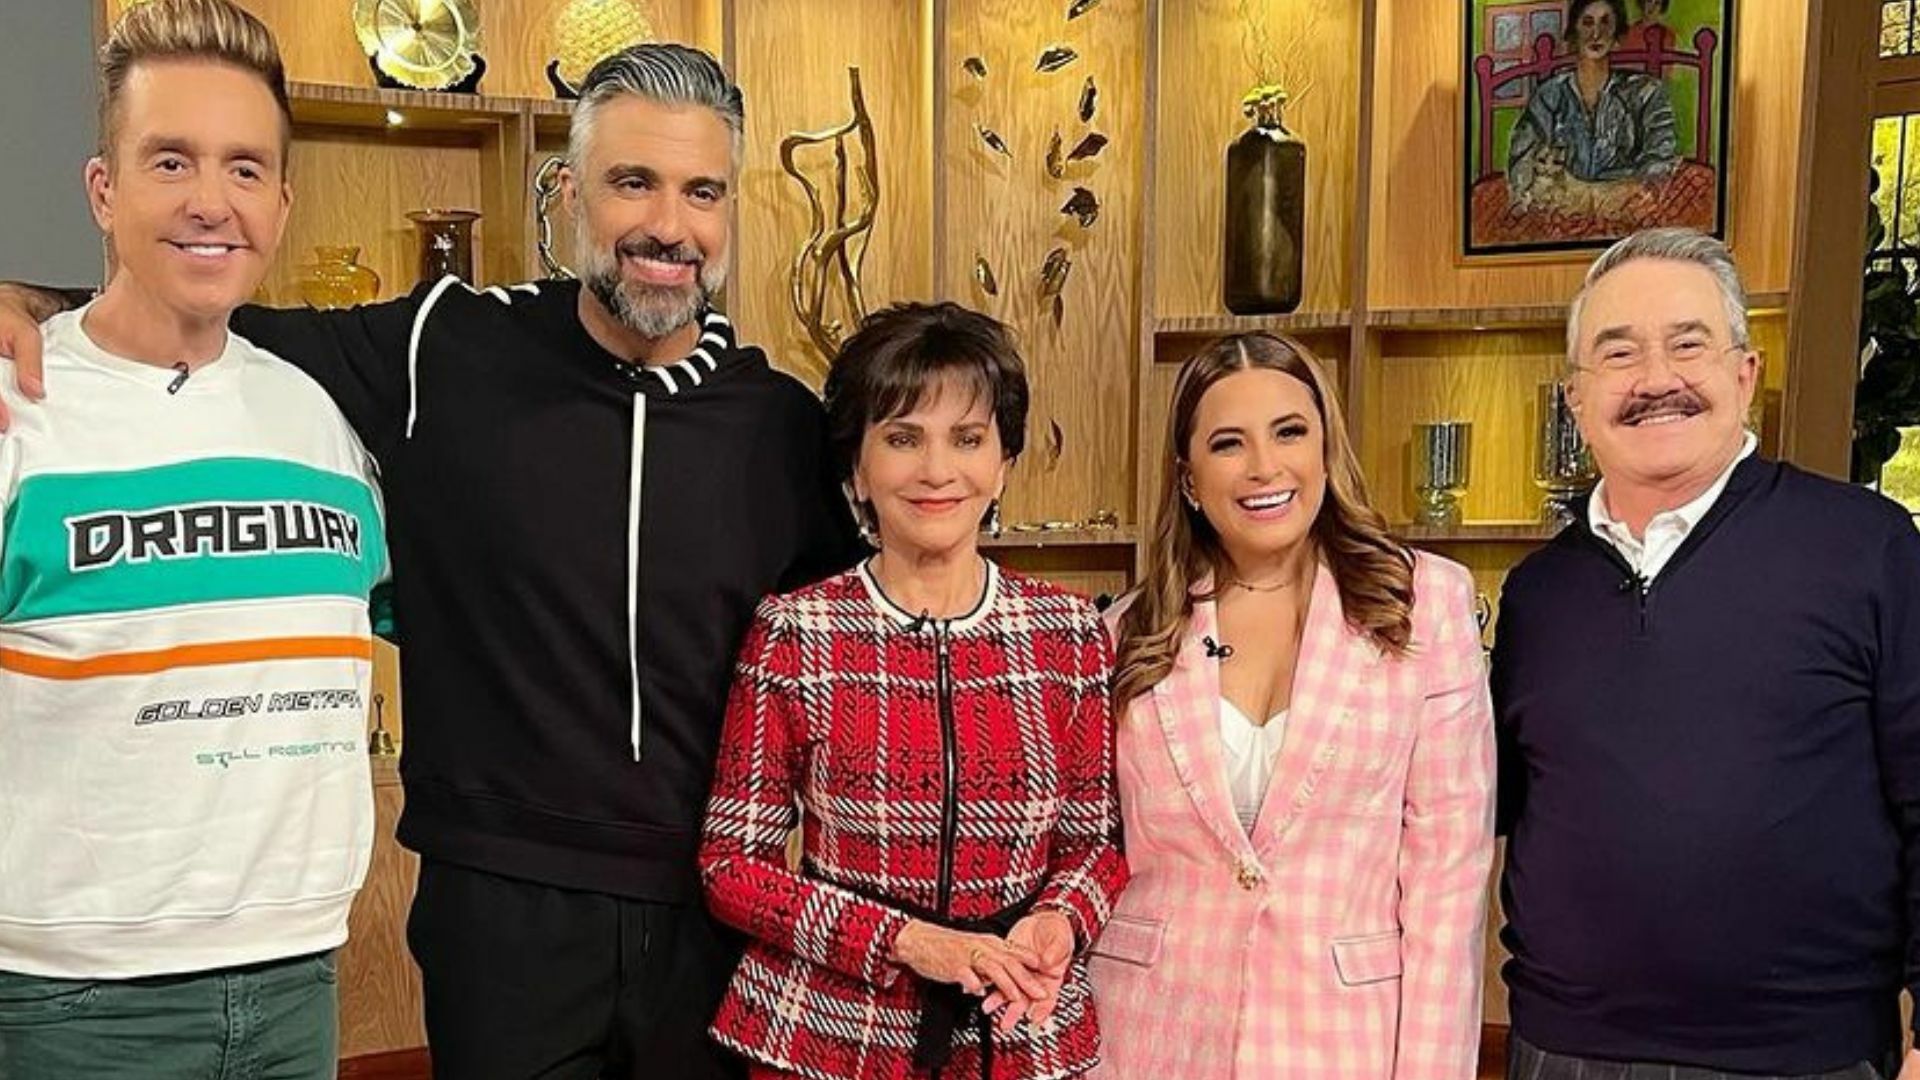 Tras años sin actuar en telenovelas de Televisa, Jaime Camil regresa a México para trabajar con TV Azteca